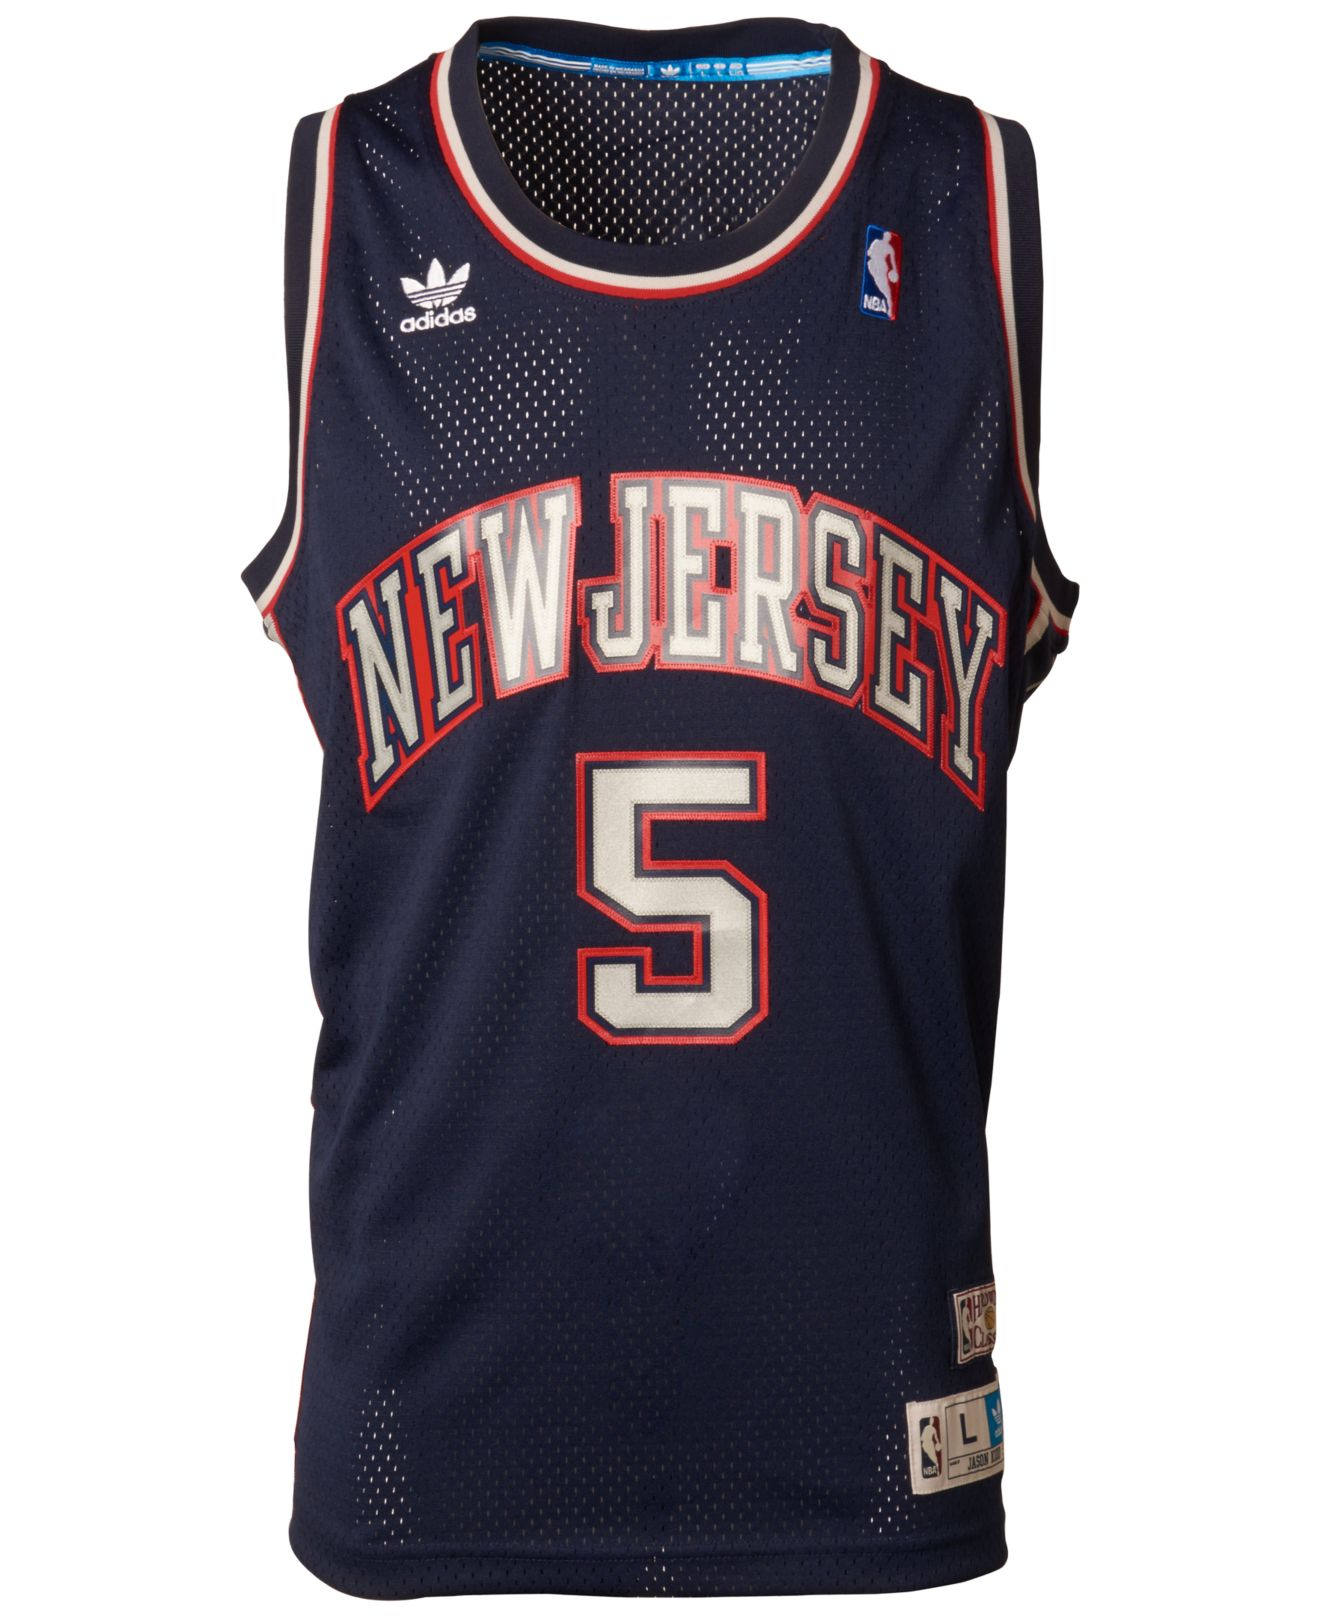 Lyst - Adidas Men'S Jason Kidd New Jersey Nets Swingman ...